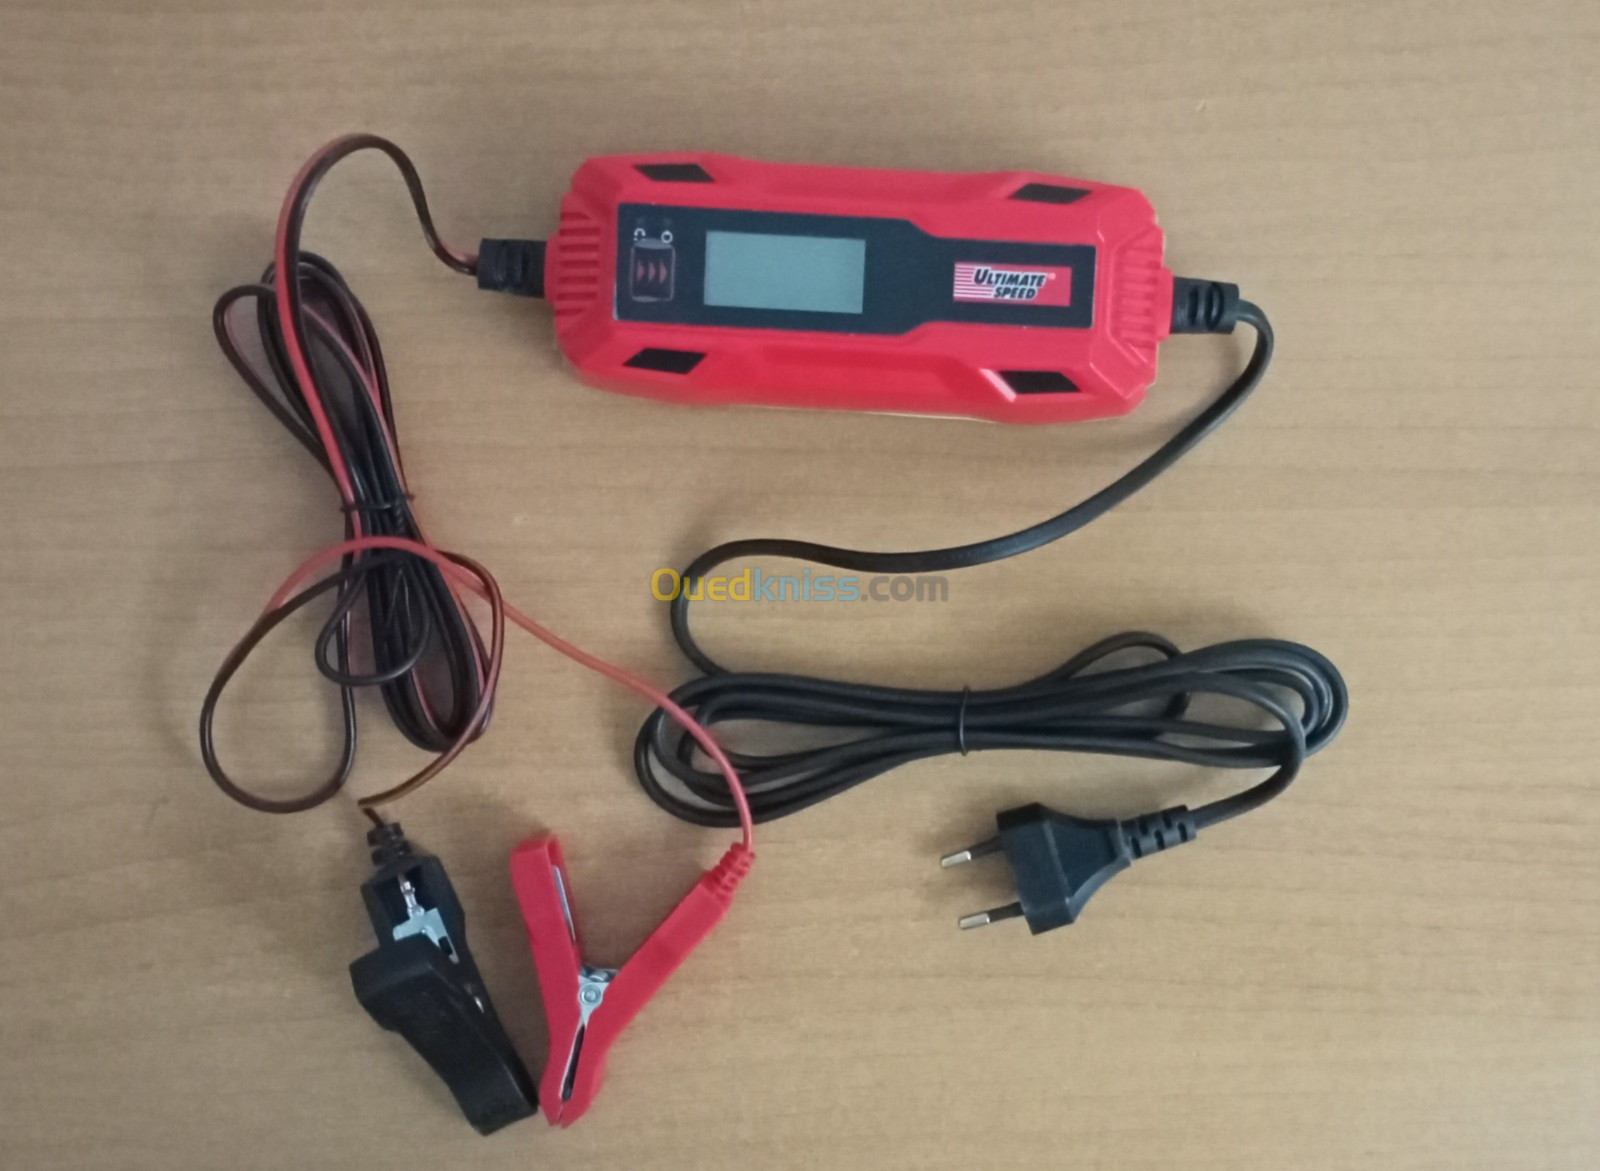 ULTIMATE SPEED Chargeur de batterie pour véhicules motorisés ULGD 5.0 C1 -  Babi Black Market